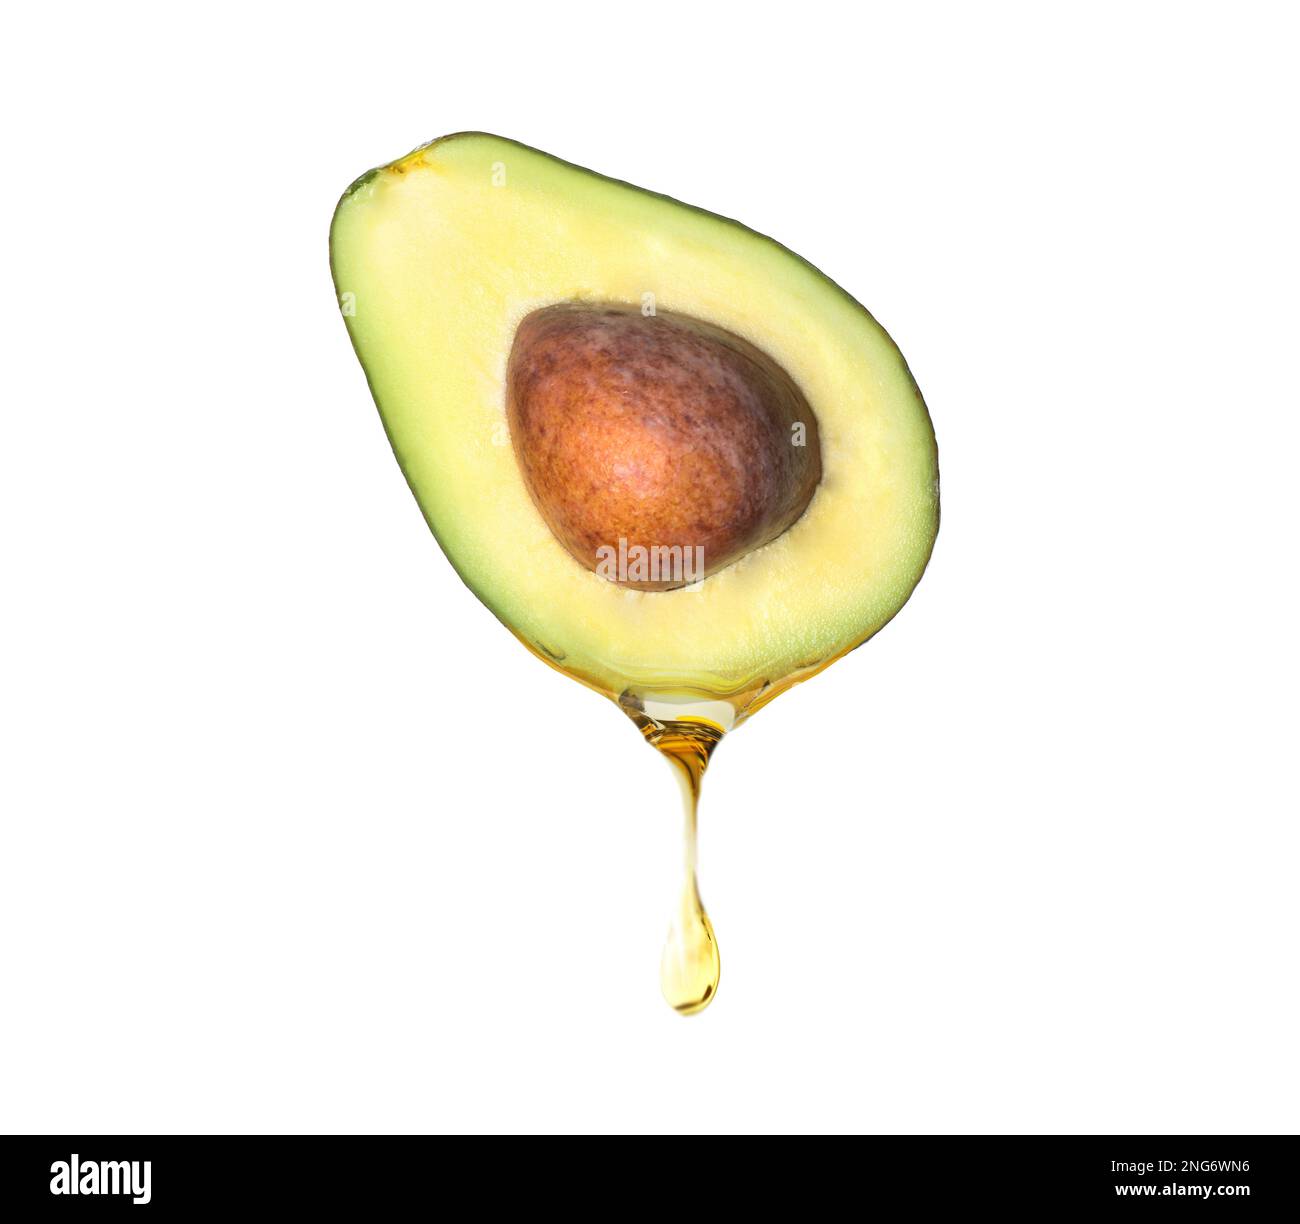 Frischer Avocado mit tropfendem Öl auf weißem Hintergrund Stockfoto